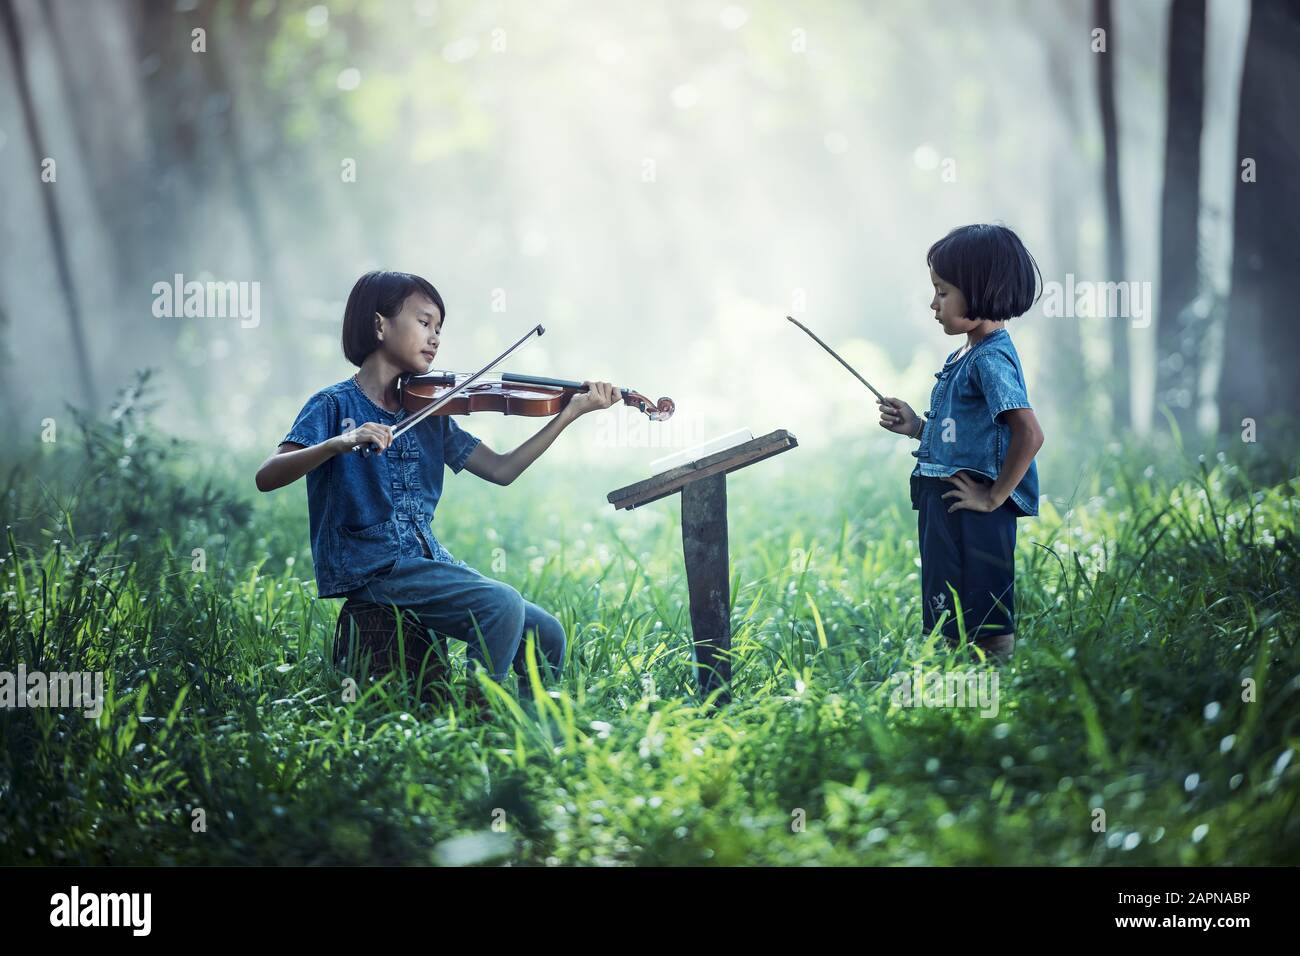 Petit enfant asiatique jouant au violon à l'extérieur Banque D'Images